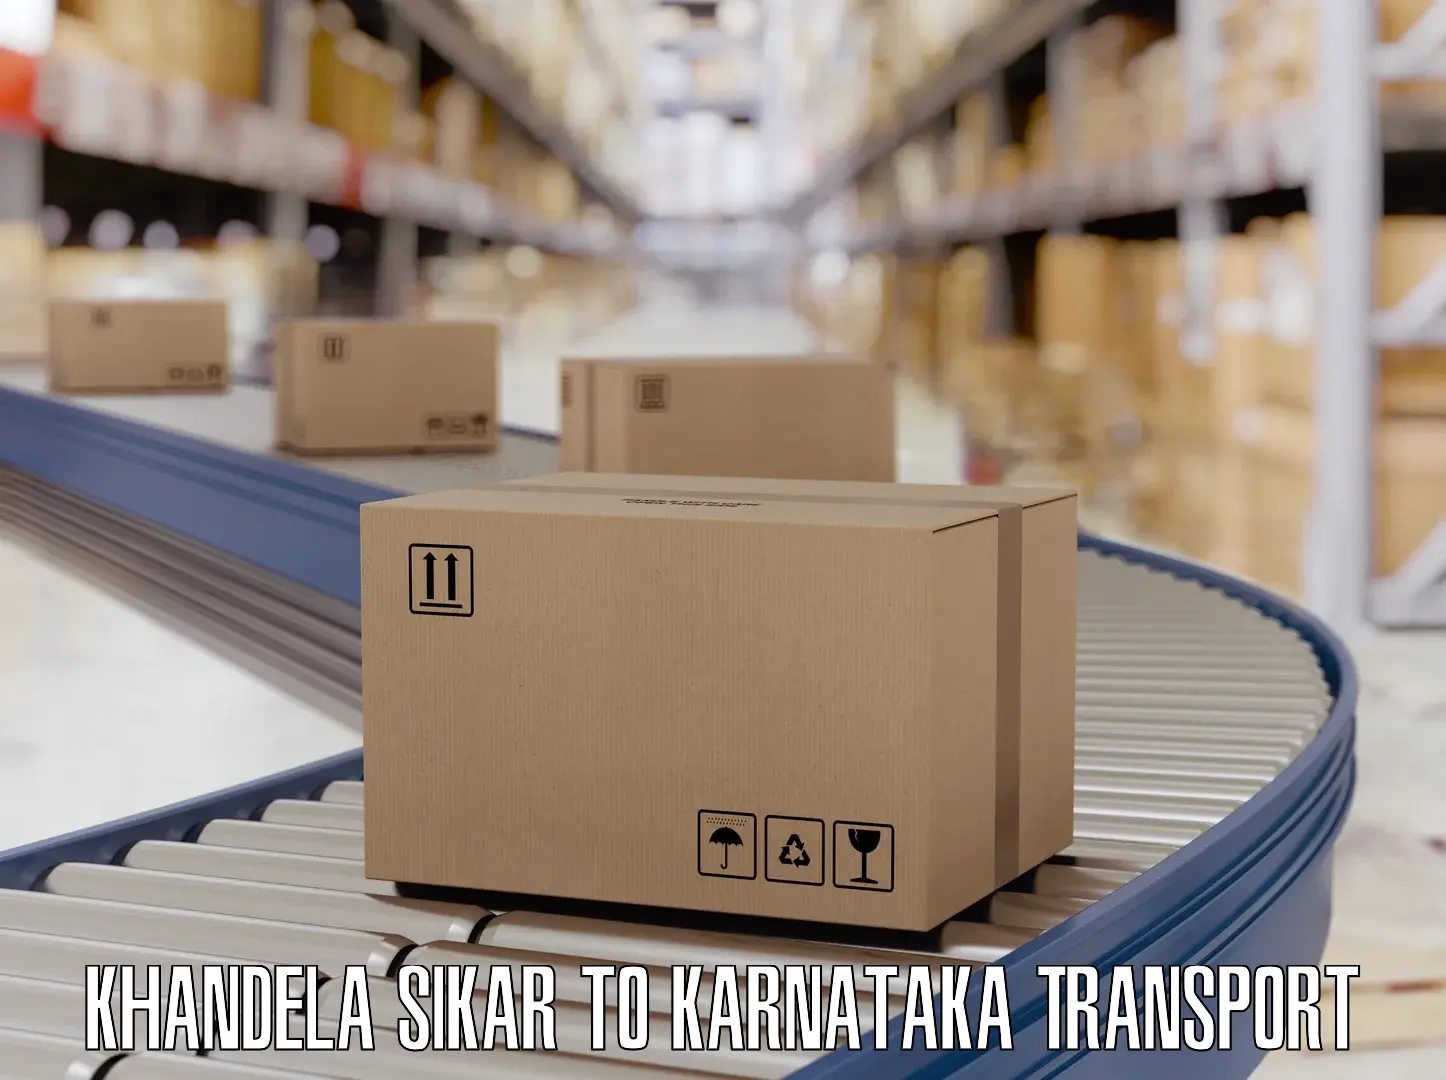 Material transport services in Khandela Sikar to Khanapur Karnataka